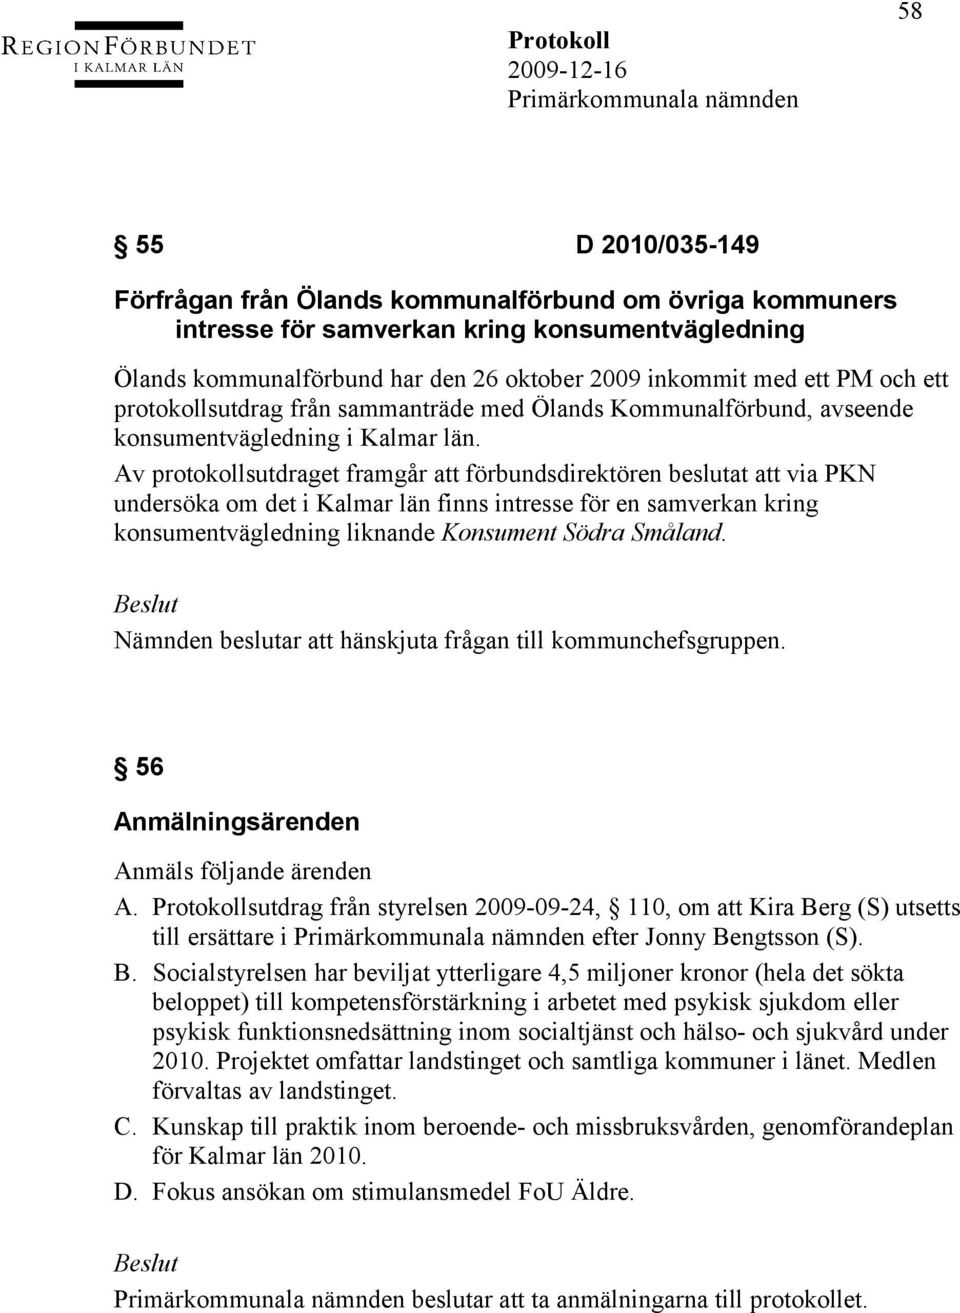 Av protokollsutdraget framgår att förbundsdirektören beslutat att via PKN undersöka om det i Kalmar län finns intresse för en samverkan kring konsumentvägledning liknande Konsument Södra Småland.